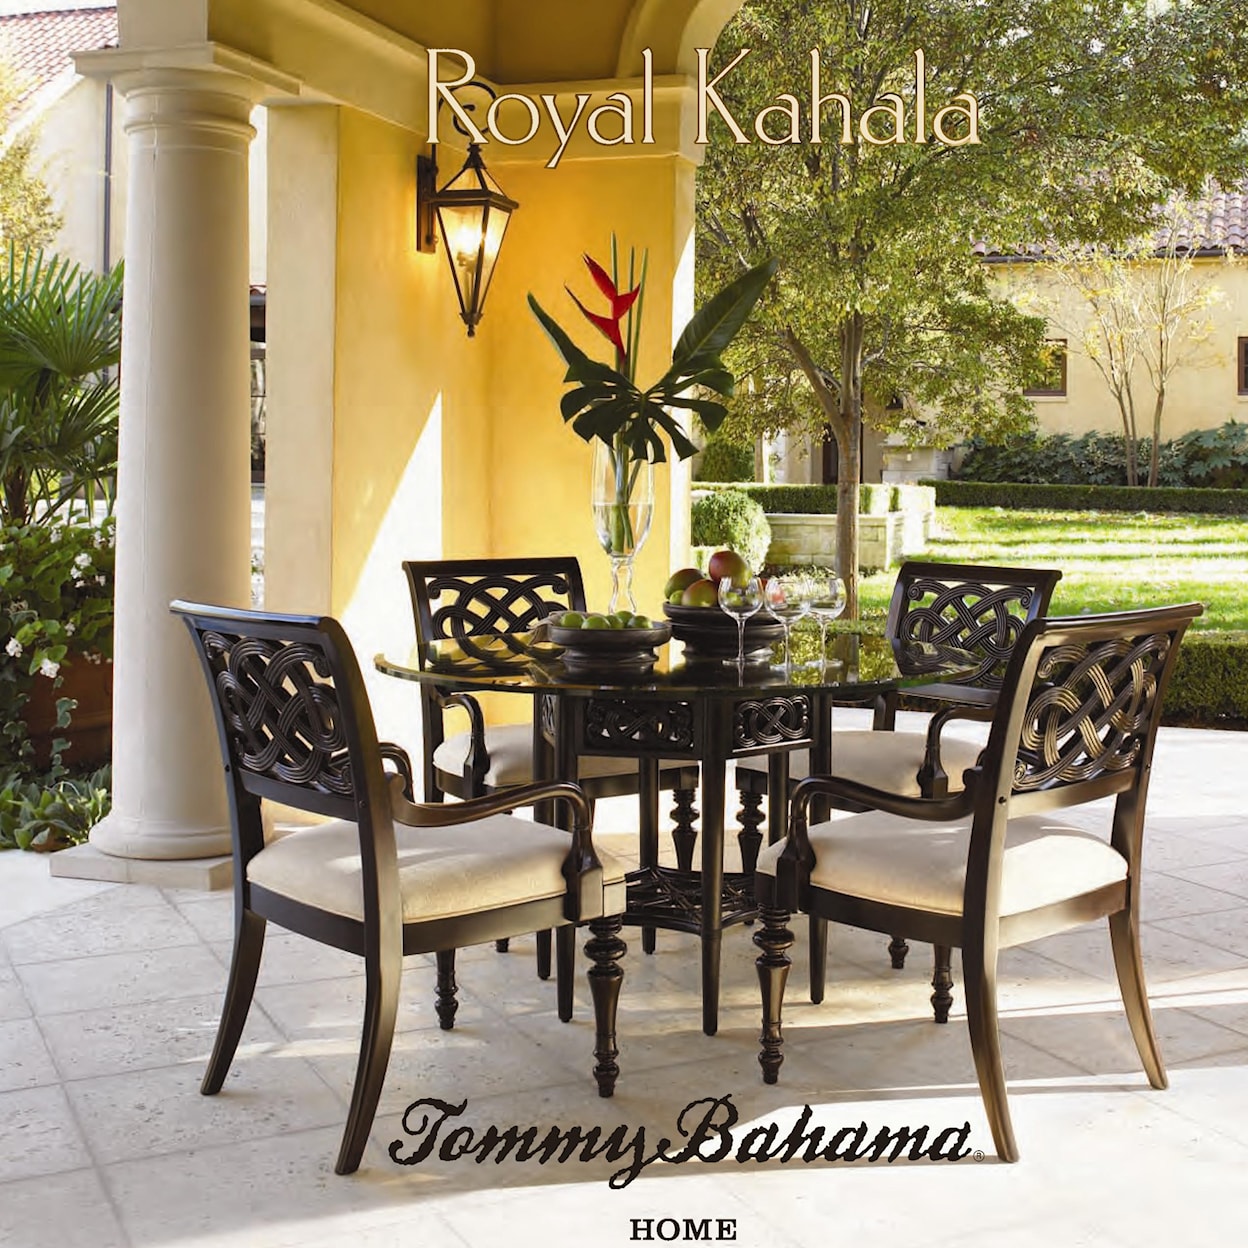 Tommy Bahama Home Royal Kahala Sea Horse Lamp Table